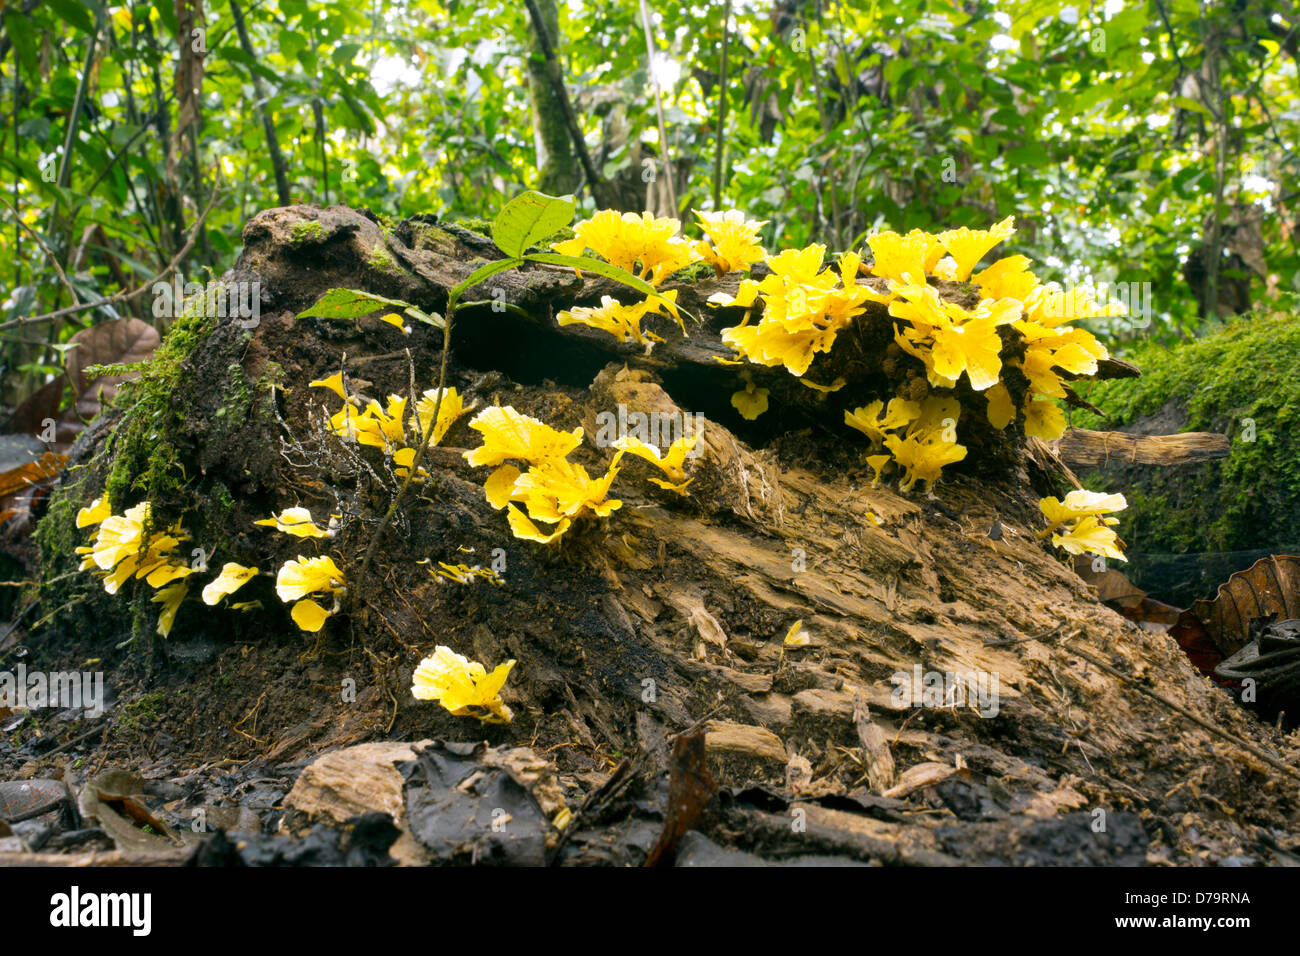 Champignon, Cotylidia aurantiaca, sur un journal qui pourrissent dans la forêt tropicale, l'Équateur Banque D'Images